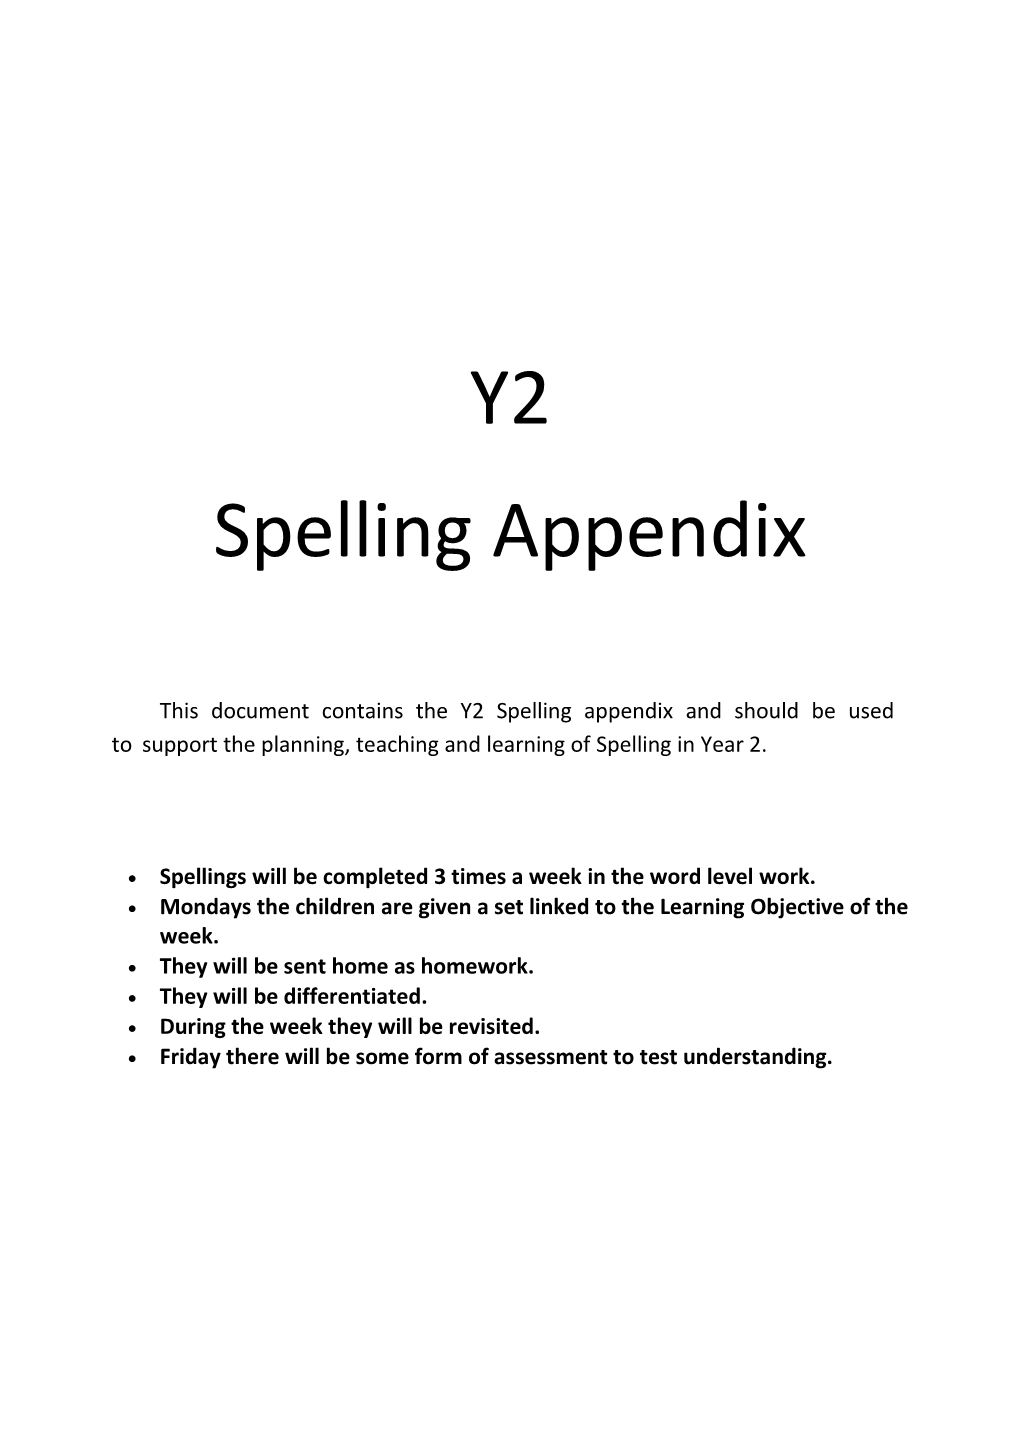 Spelling Appendix